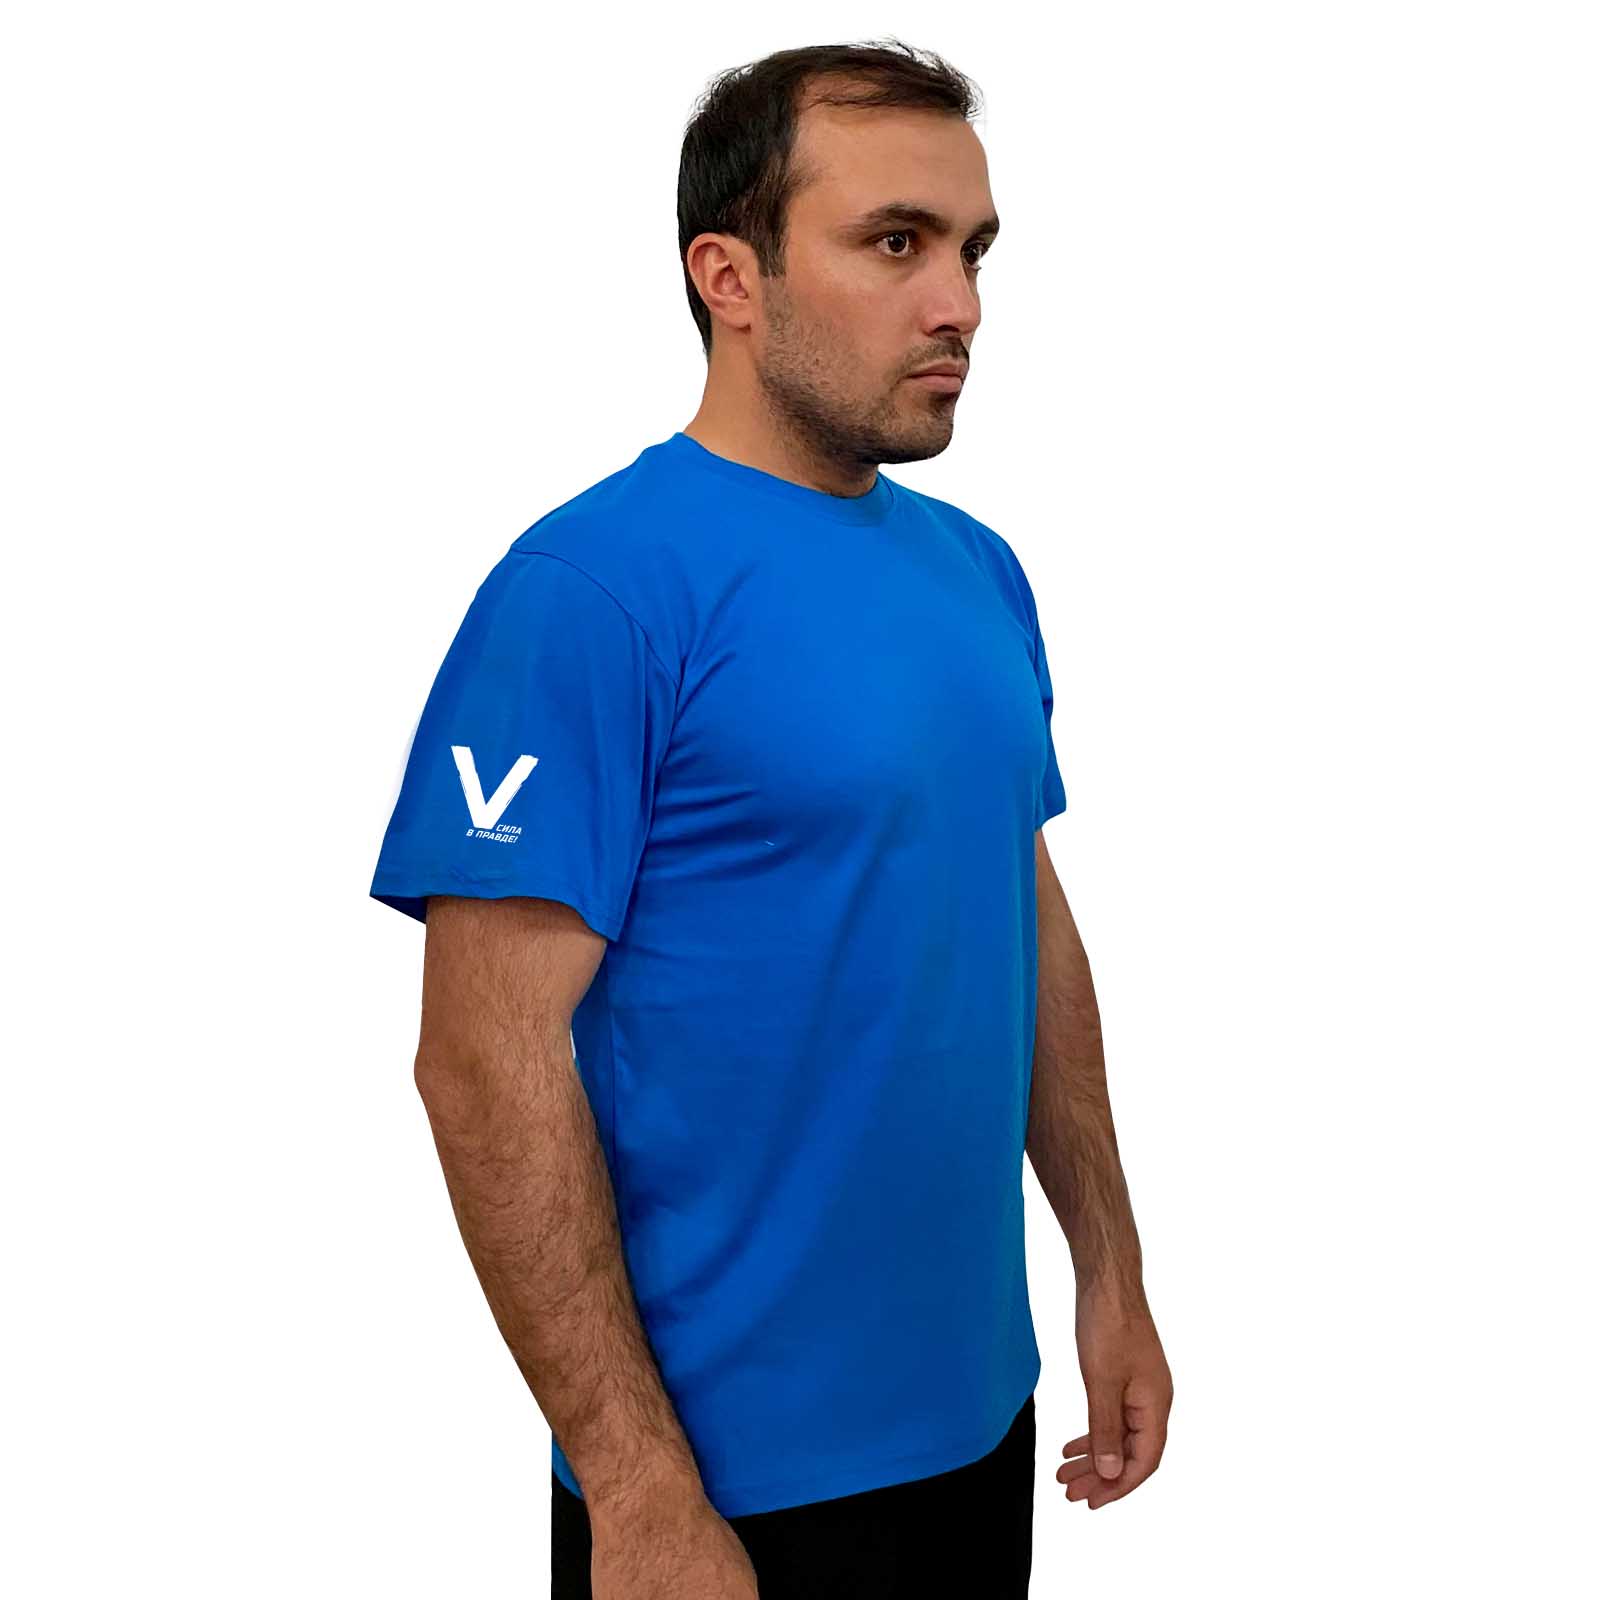 Купить хлопковую голубую футболку с литерой V с доставкой